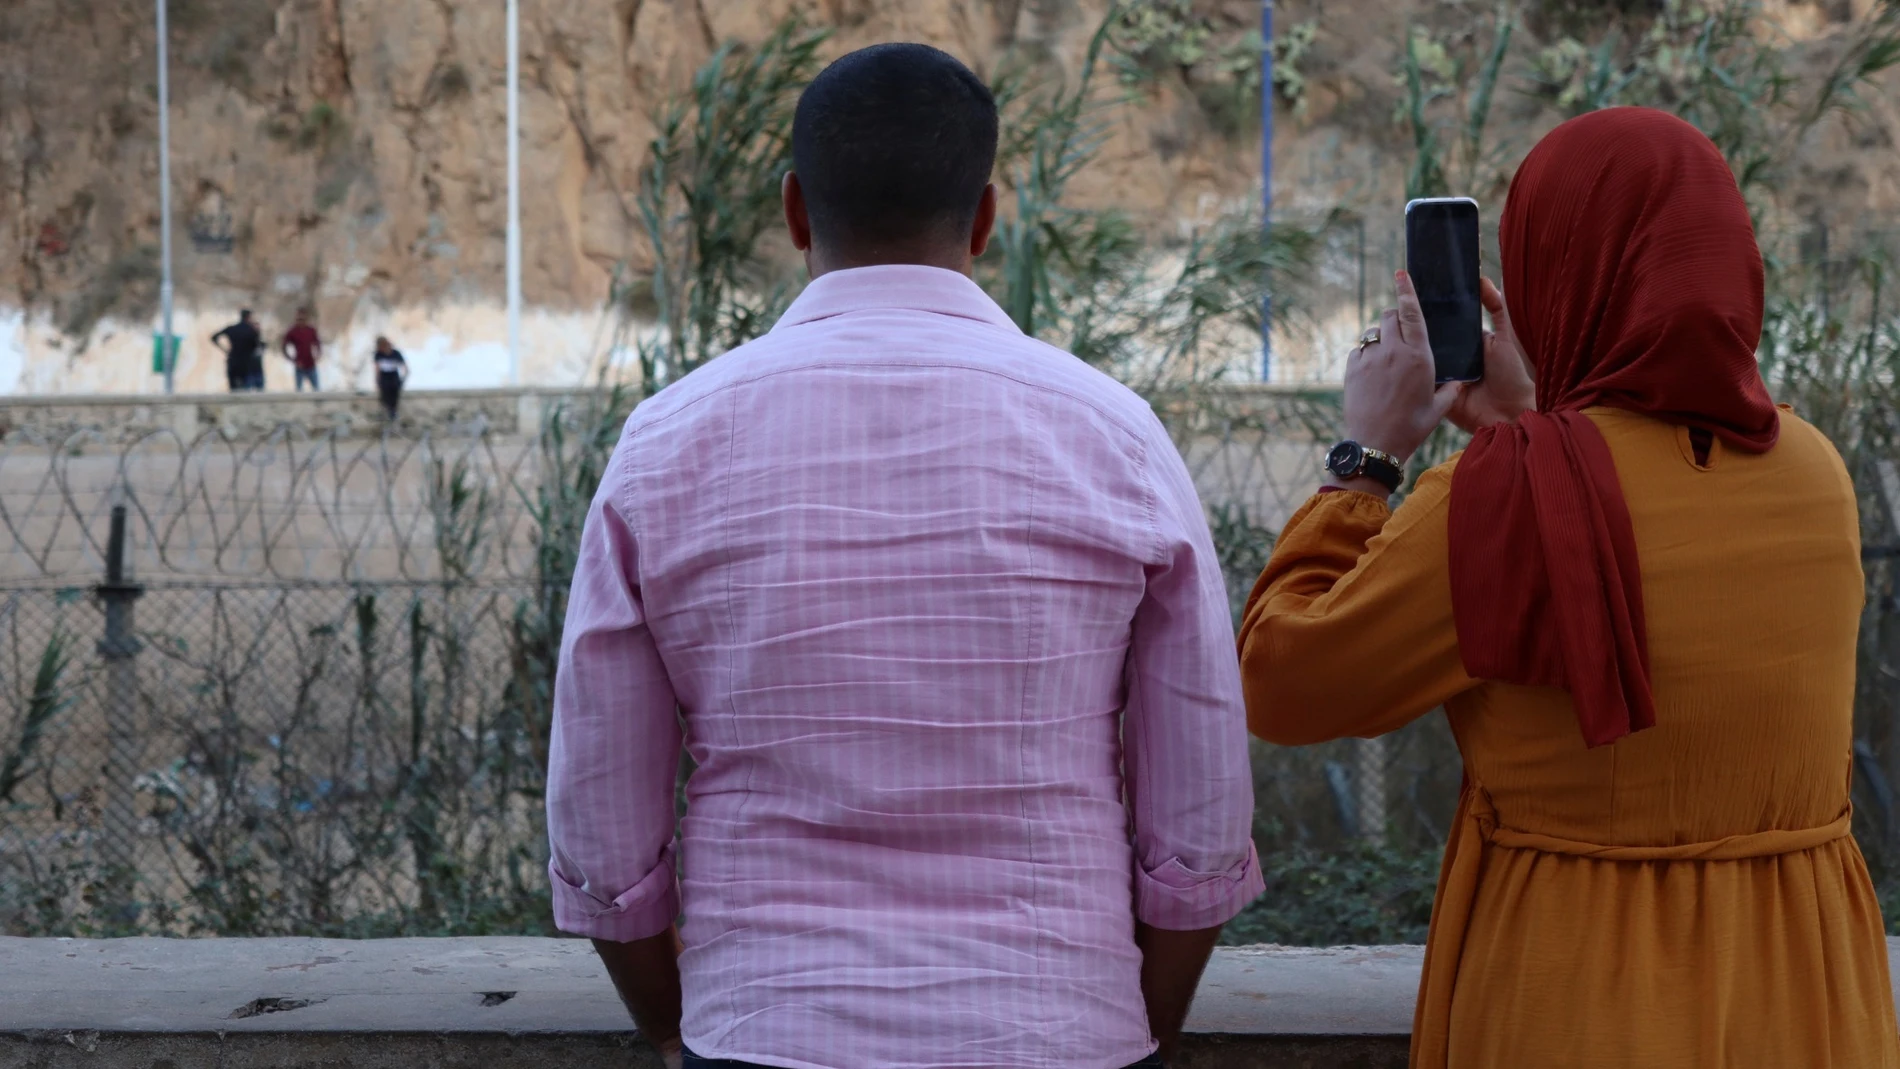 Familiares y personas curiosas saludan a los argelinos en la zona de Bin Lajraf. Una madre rompe a llorar al ver a su hija que le saluda moviendo la mano desde lejos, bajo la mirada de Hasan, vendedor ambulante de café y testigo de historias que se repiten cada día.